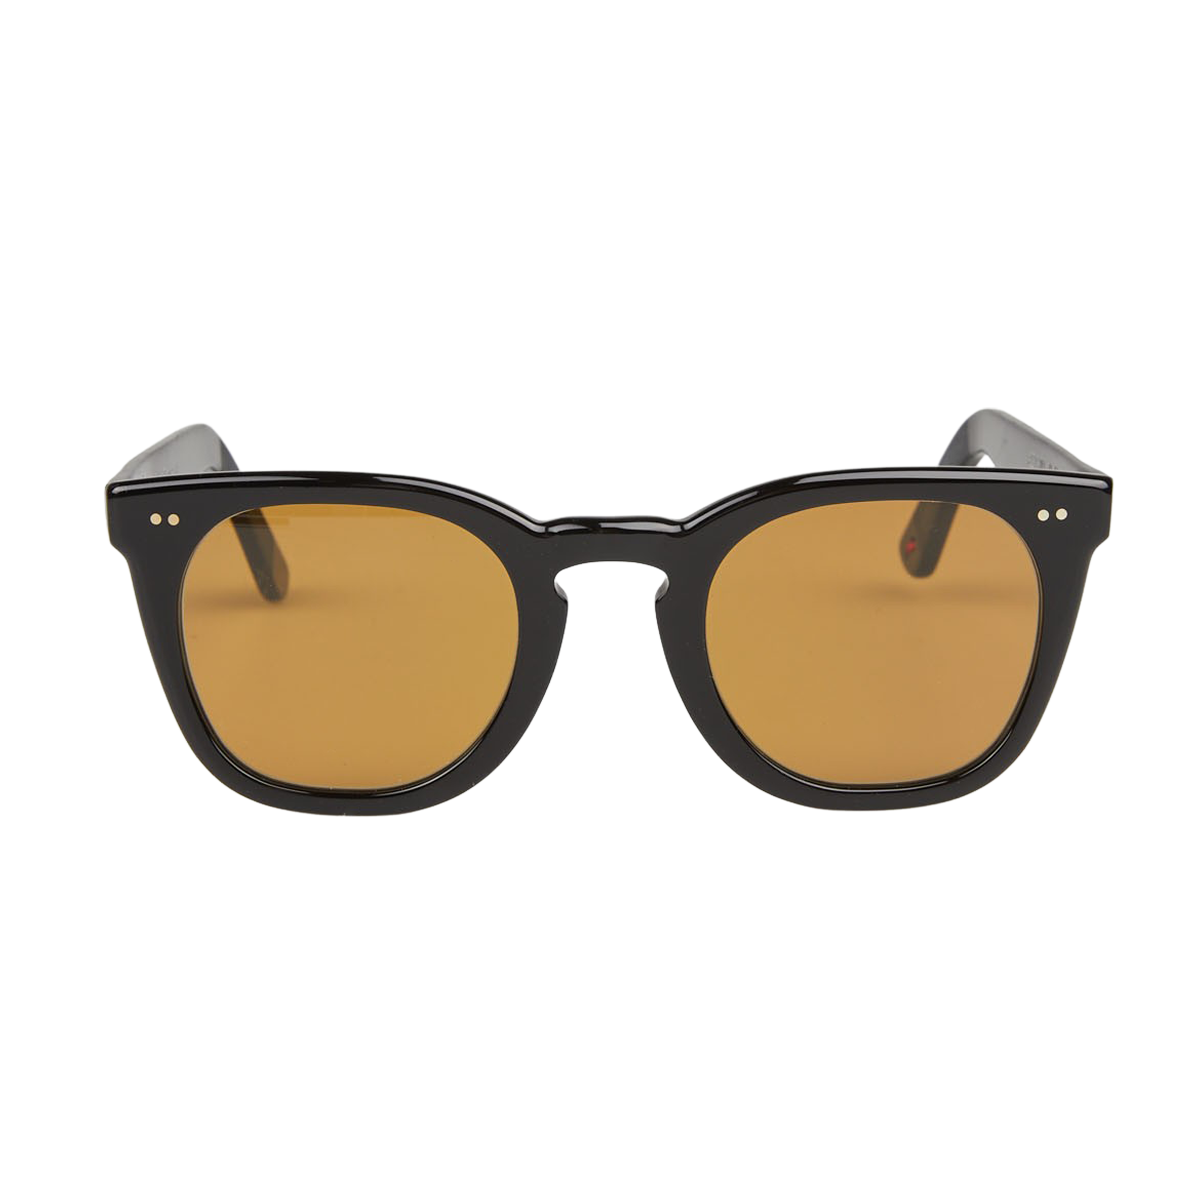 Lunettes Alf Black A22.13.001 Sunglasses Front